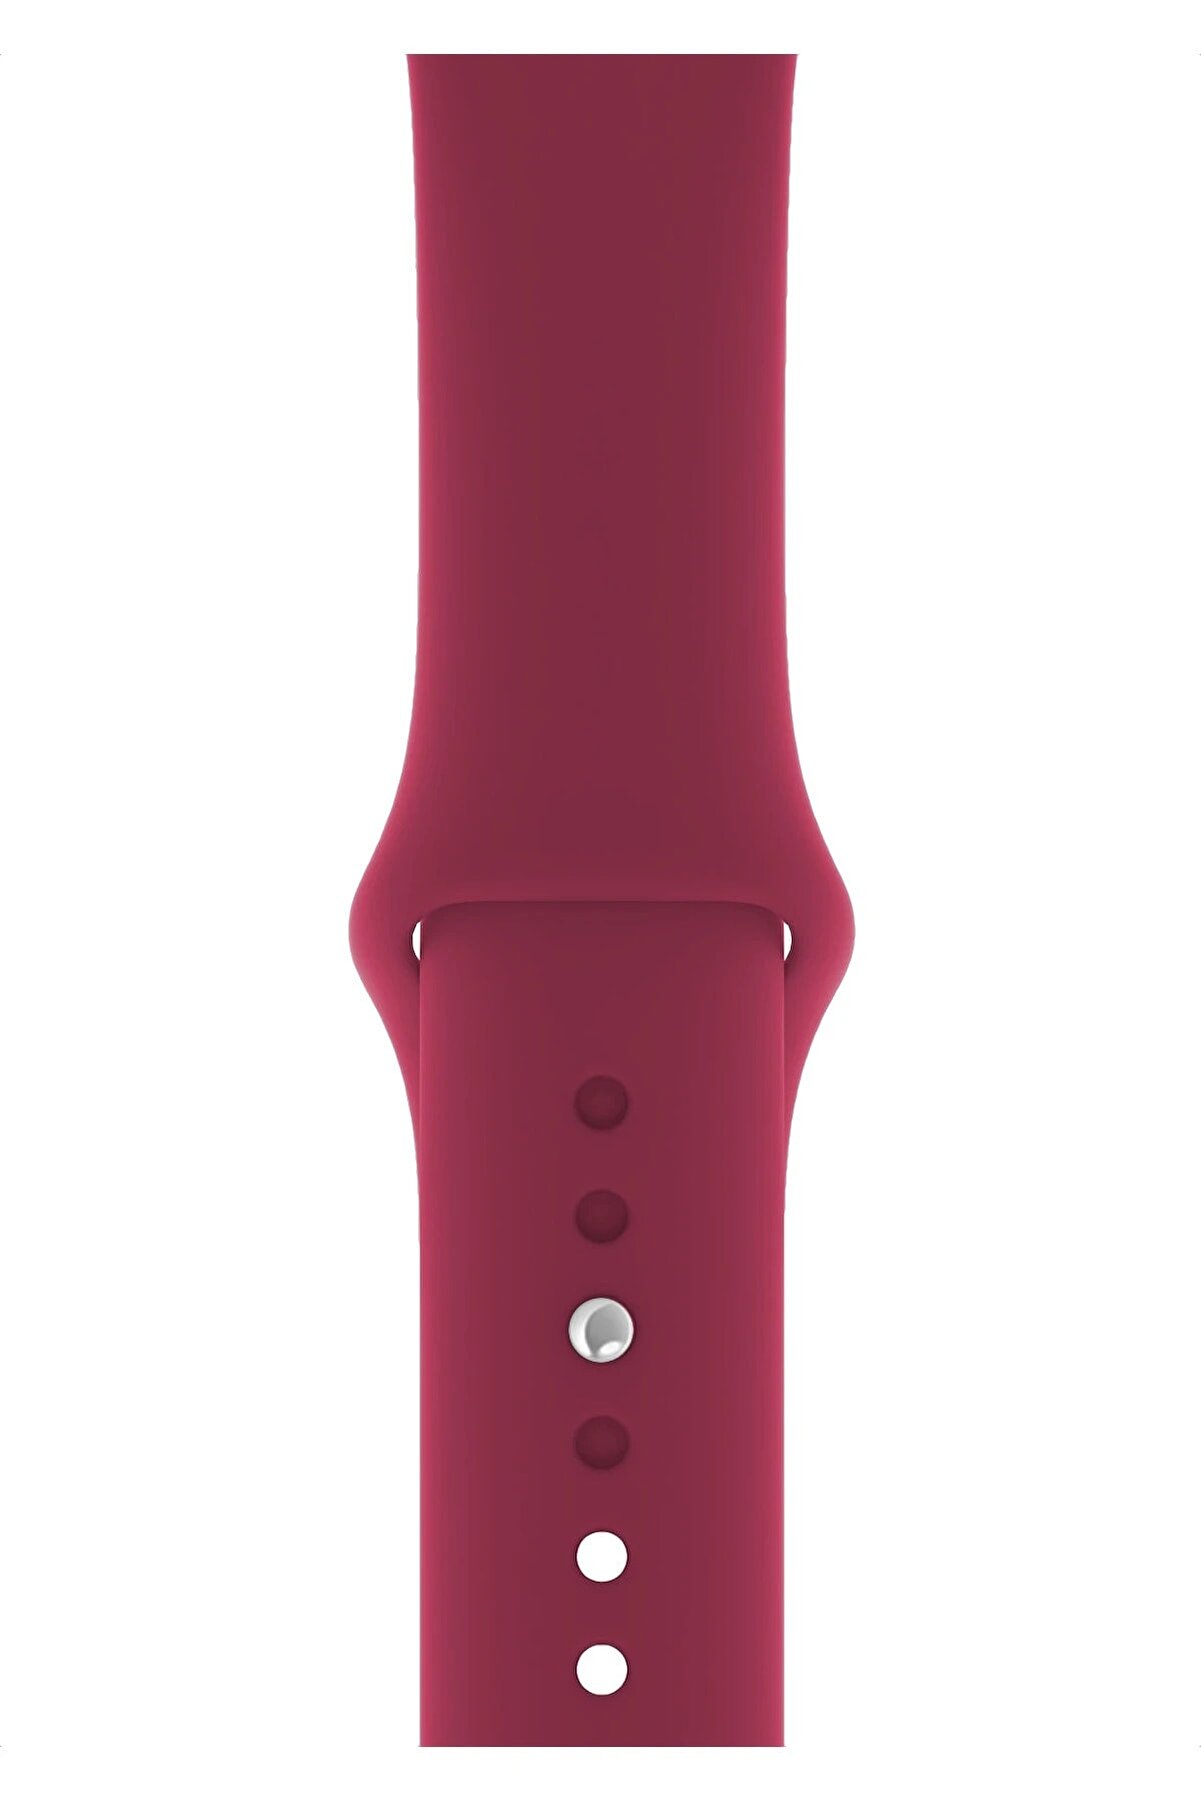 Fibaks Unisex Bordo Apple Watch 44mm A+ Yüksek Kalite Spor Klasik Silikon Kordon